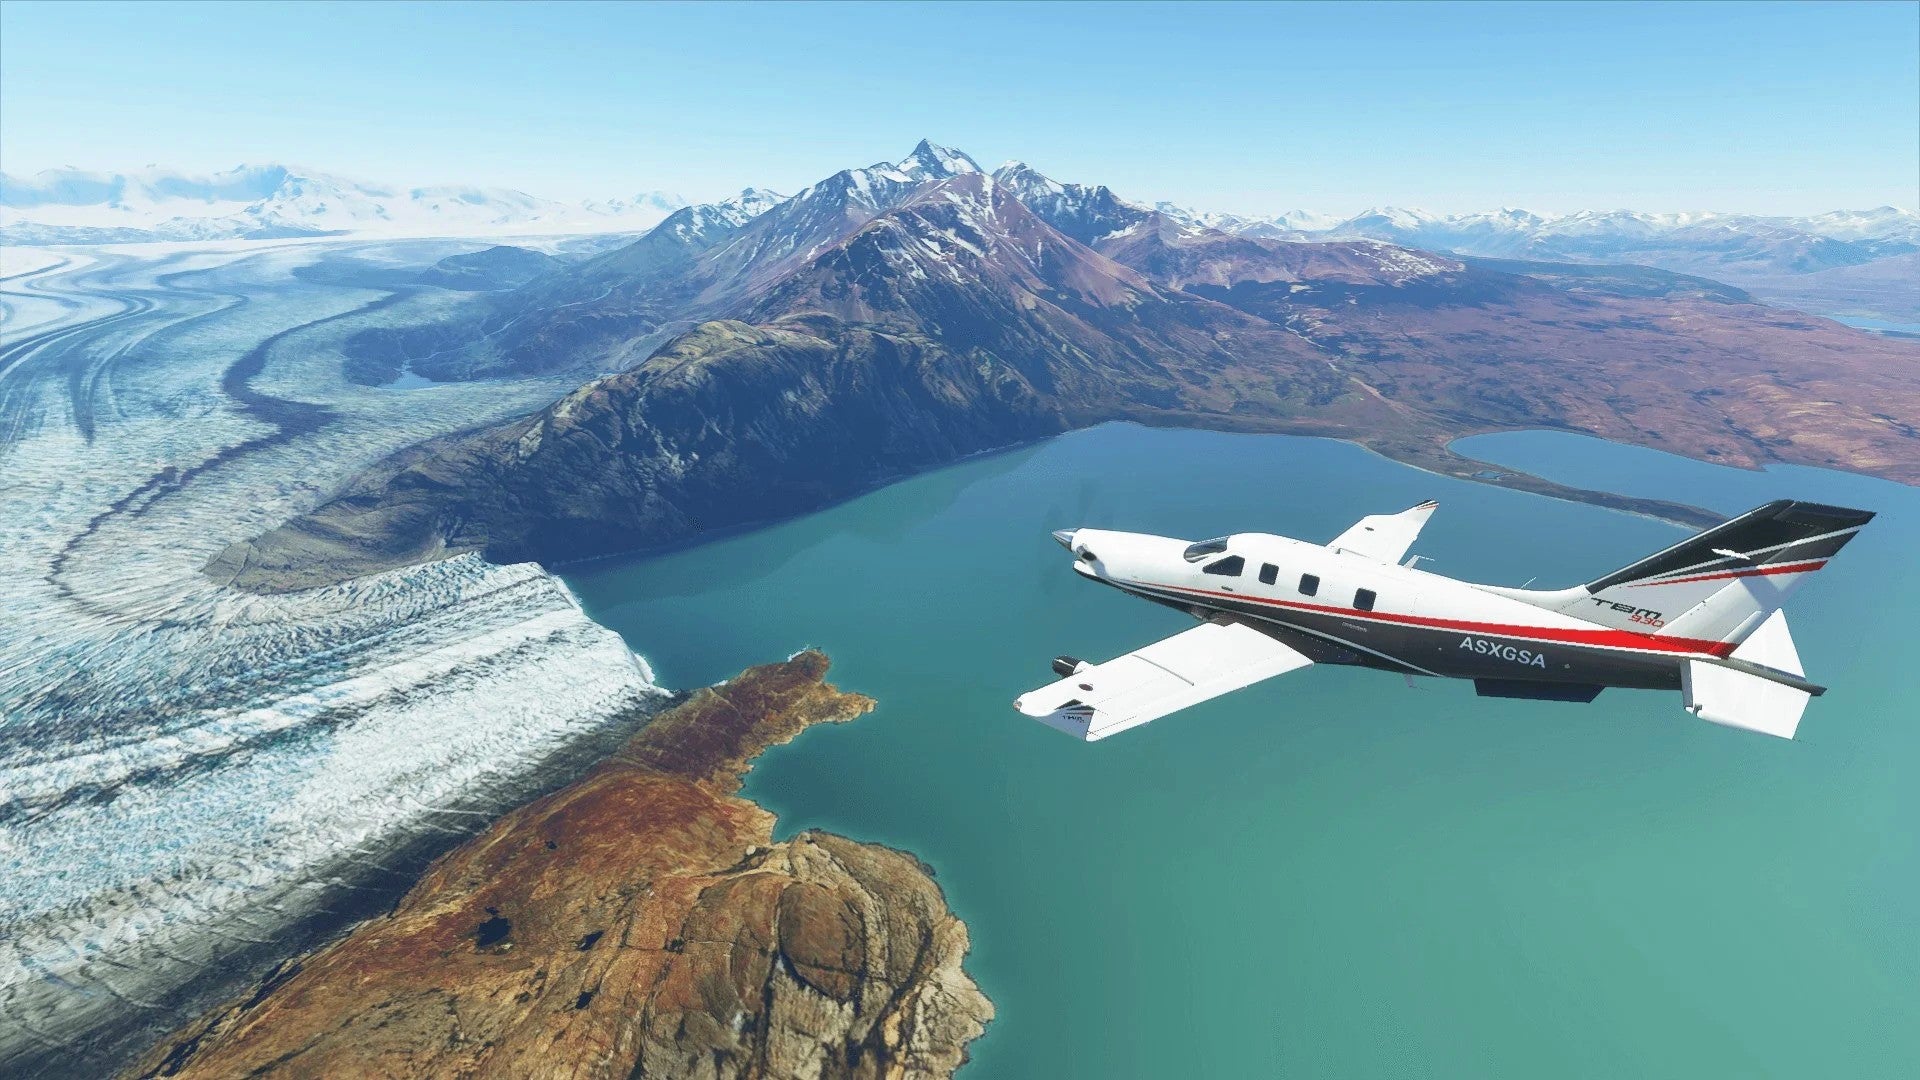 Bilder zu Microsoft Flight Simulator: Kostenlose Top-Gun-Erweiterung kommt Ende Mai